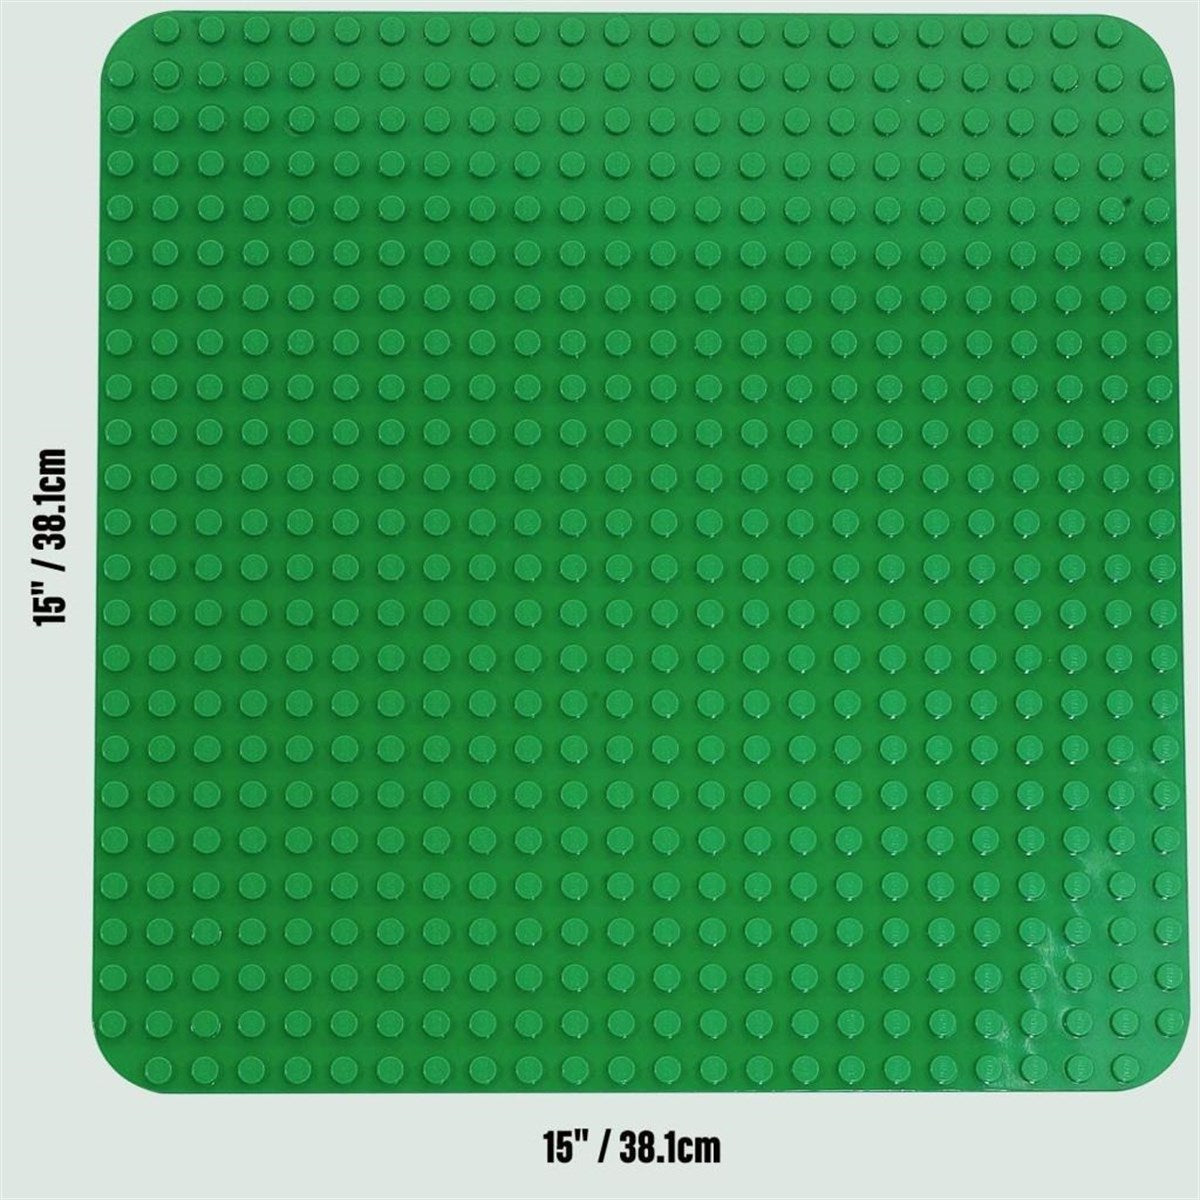 Lego Duplo Yesil Taban Plakası 2304 | Toysall